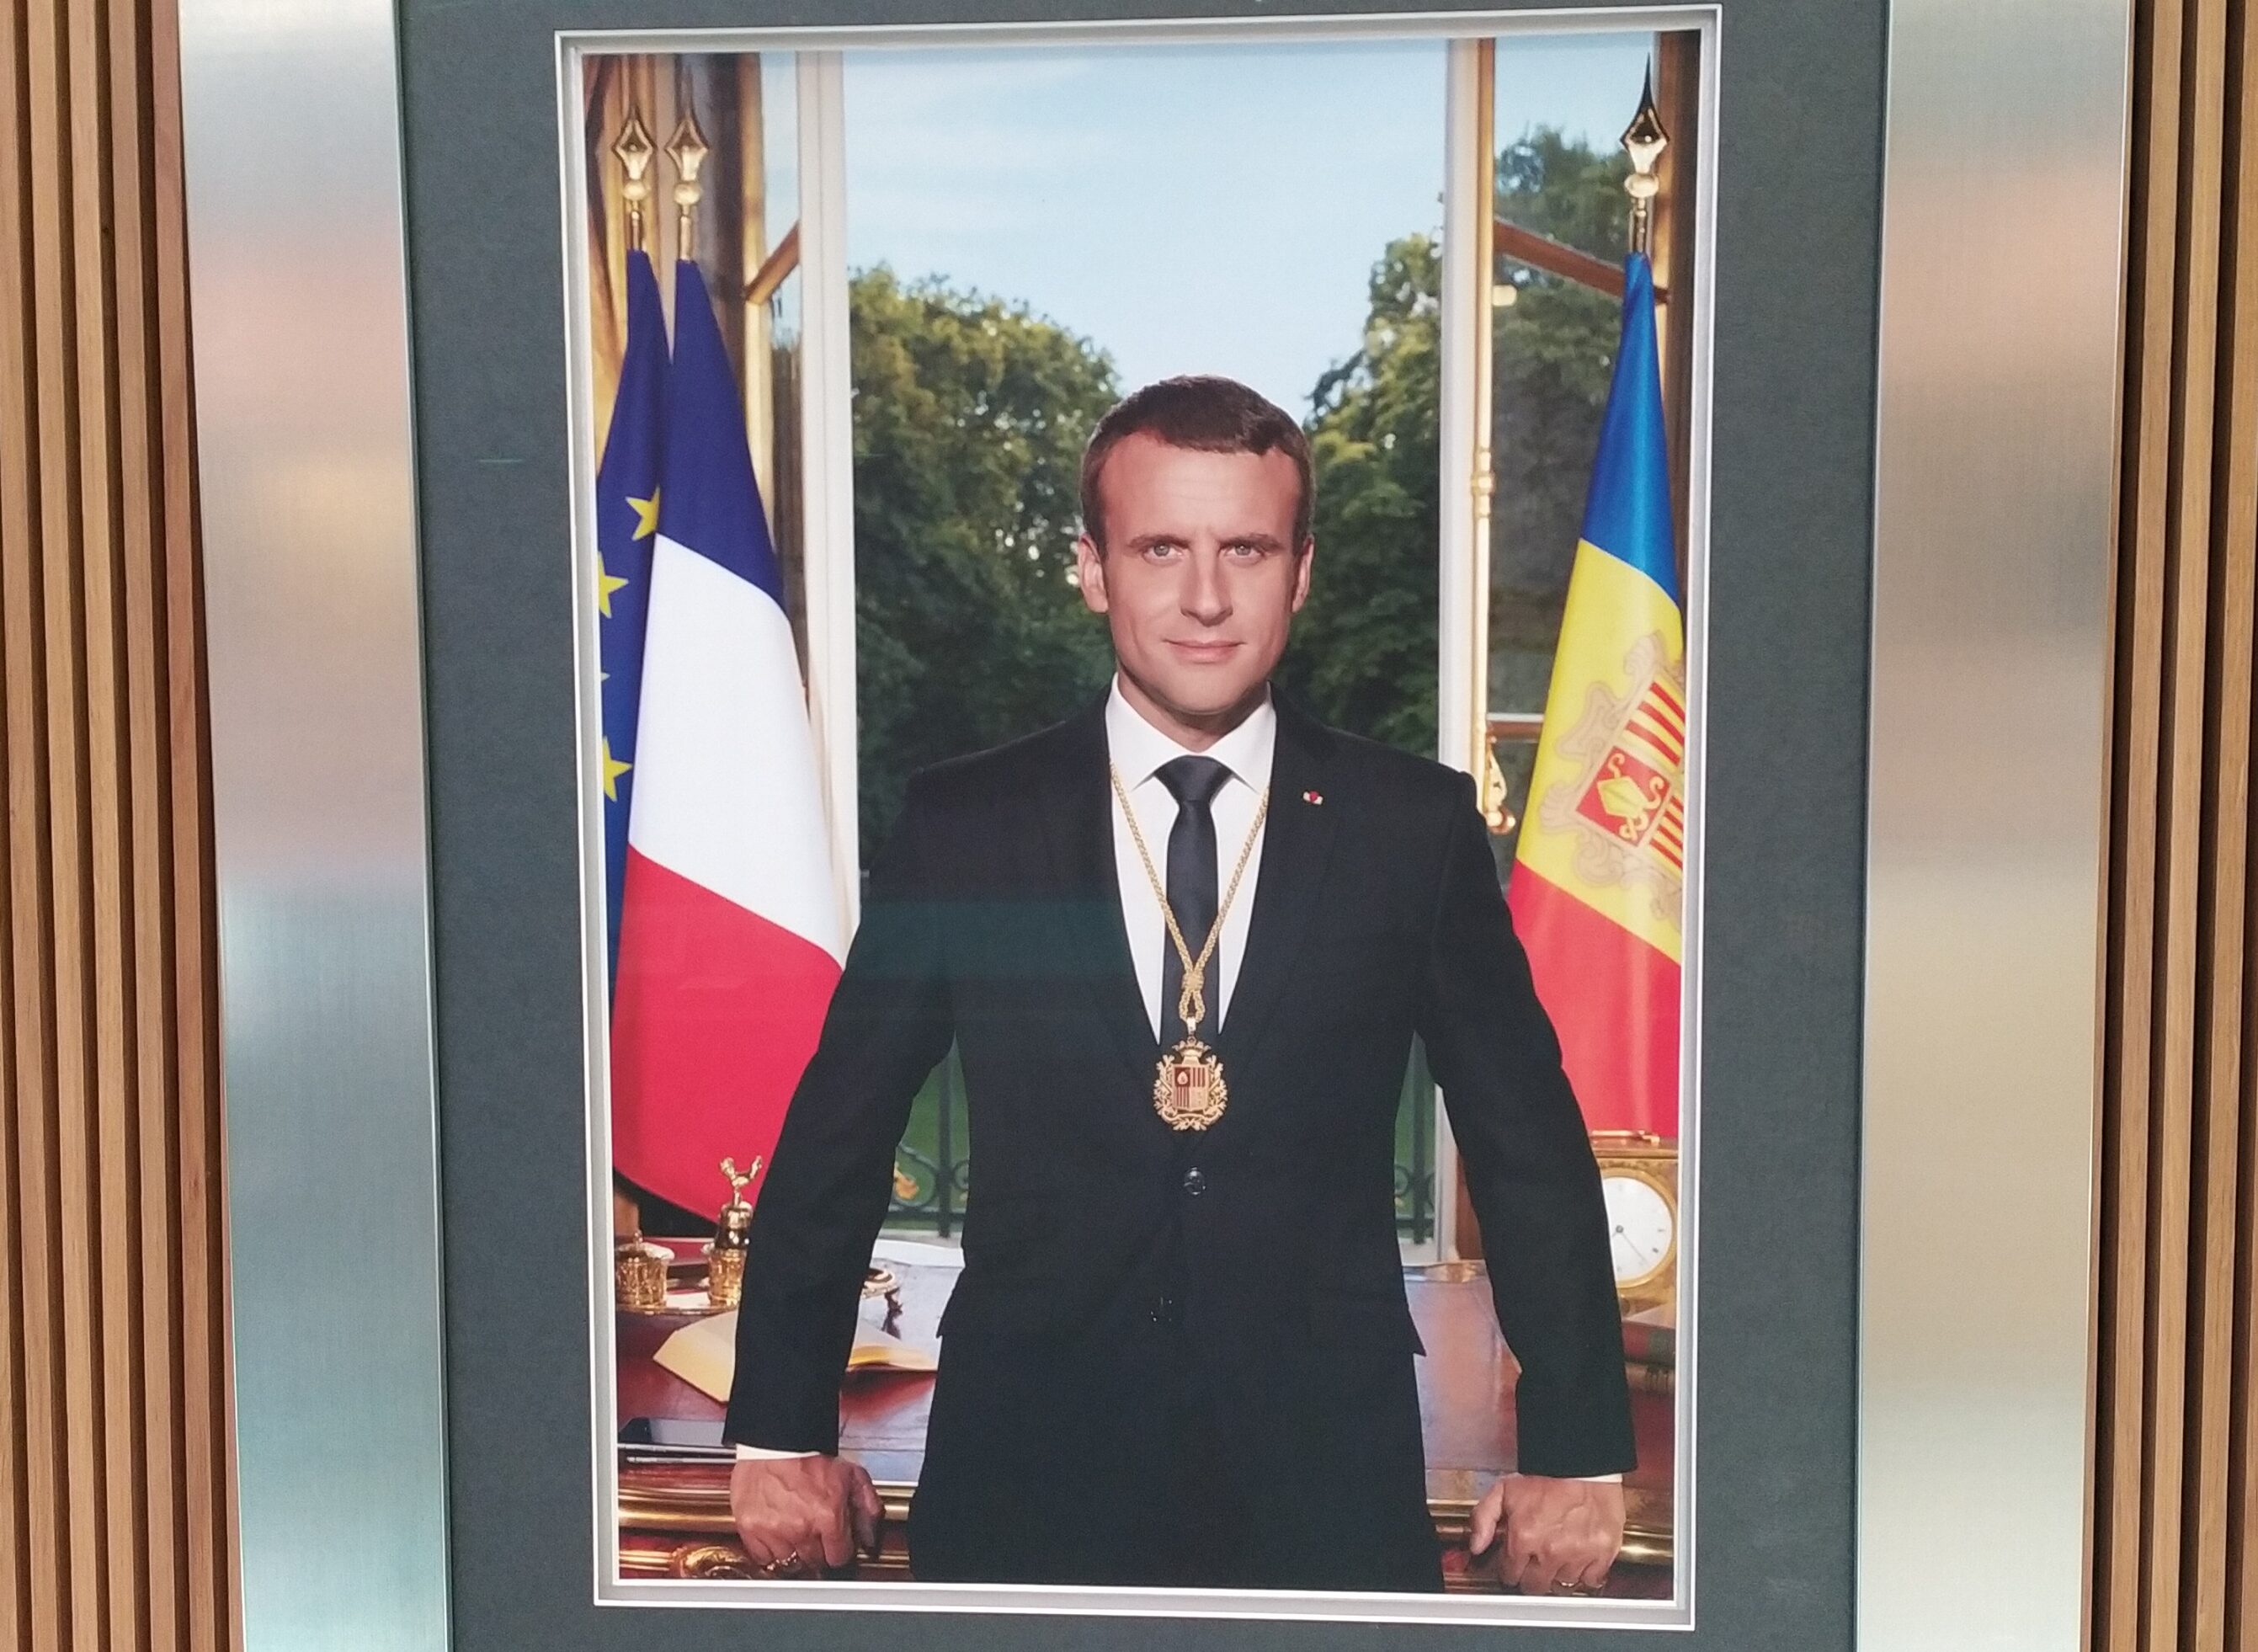 Retrat del copríncep Macron al Consell General d'Andorra